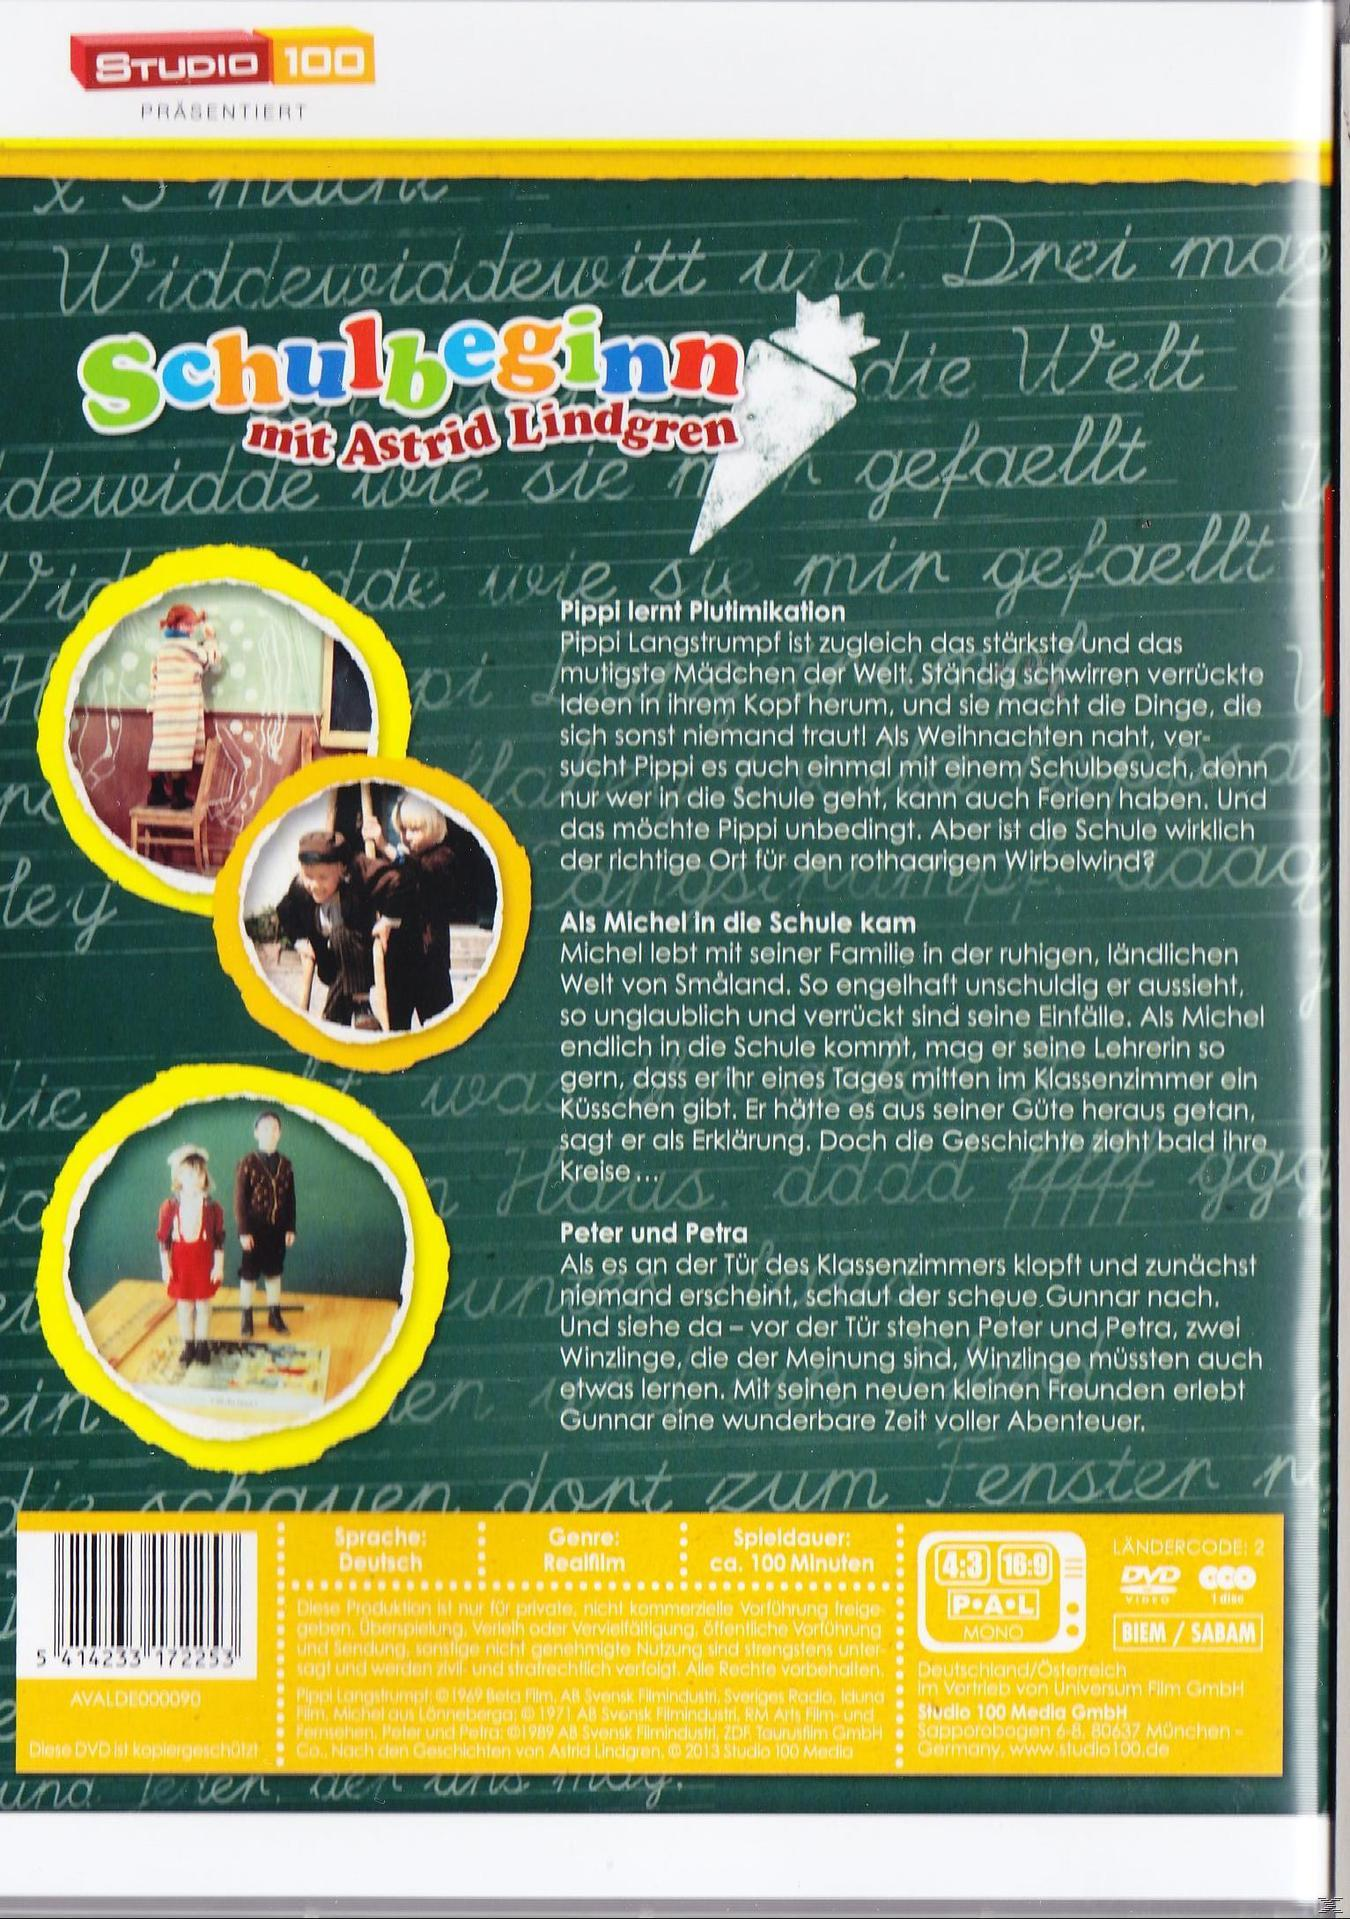 Lindgren DVD mit Schulbeginn Astrid